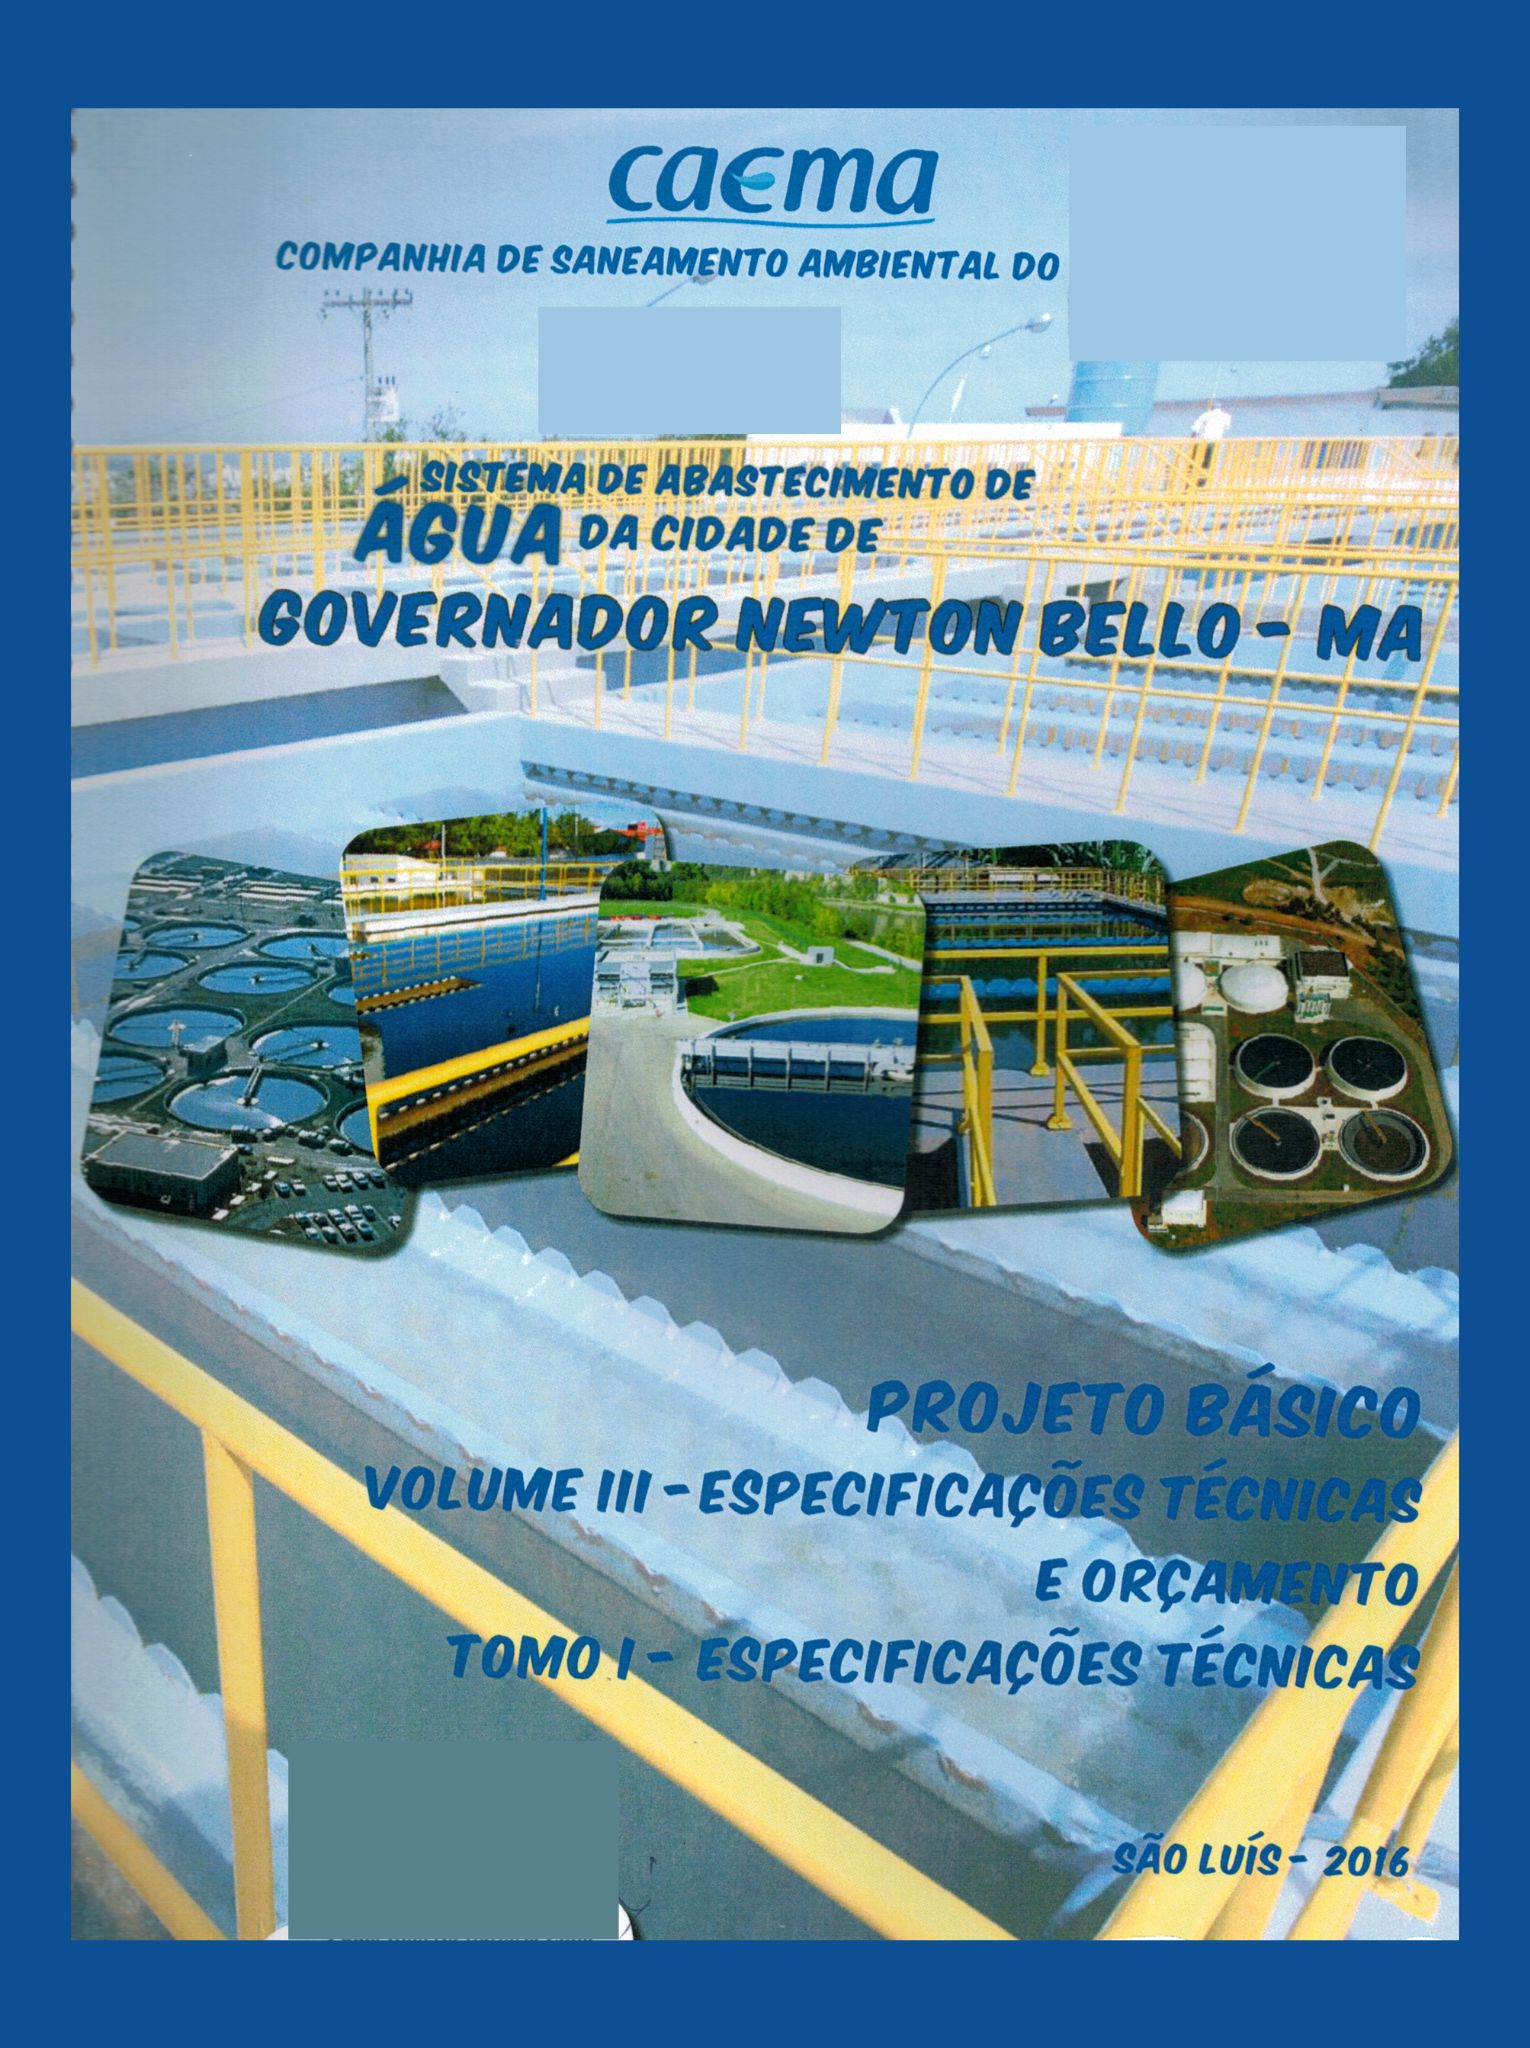 Imagem da capa do Projeto técnico com informações sobre título e autoria.